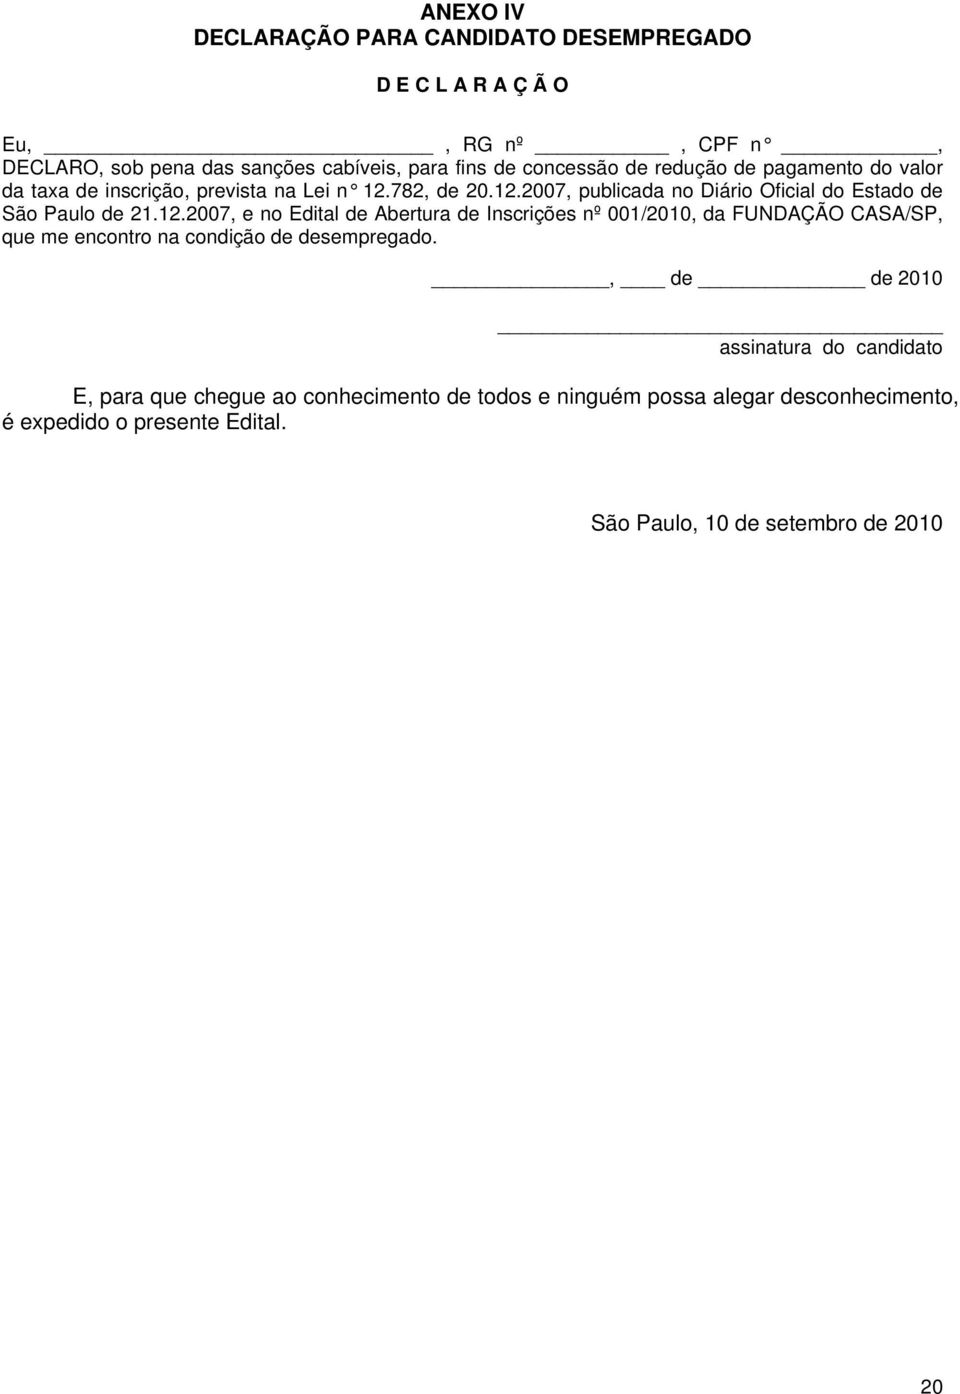 782, de 20.12.2007, publicada no Diário Oficial do Estado de São Paulo de 21.12.2007, e no Edital de Abertura de Inscrições nº 001/2010, da FUNDAÇÃO CASA/SP, que me encontro na condição de desempregado.